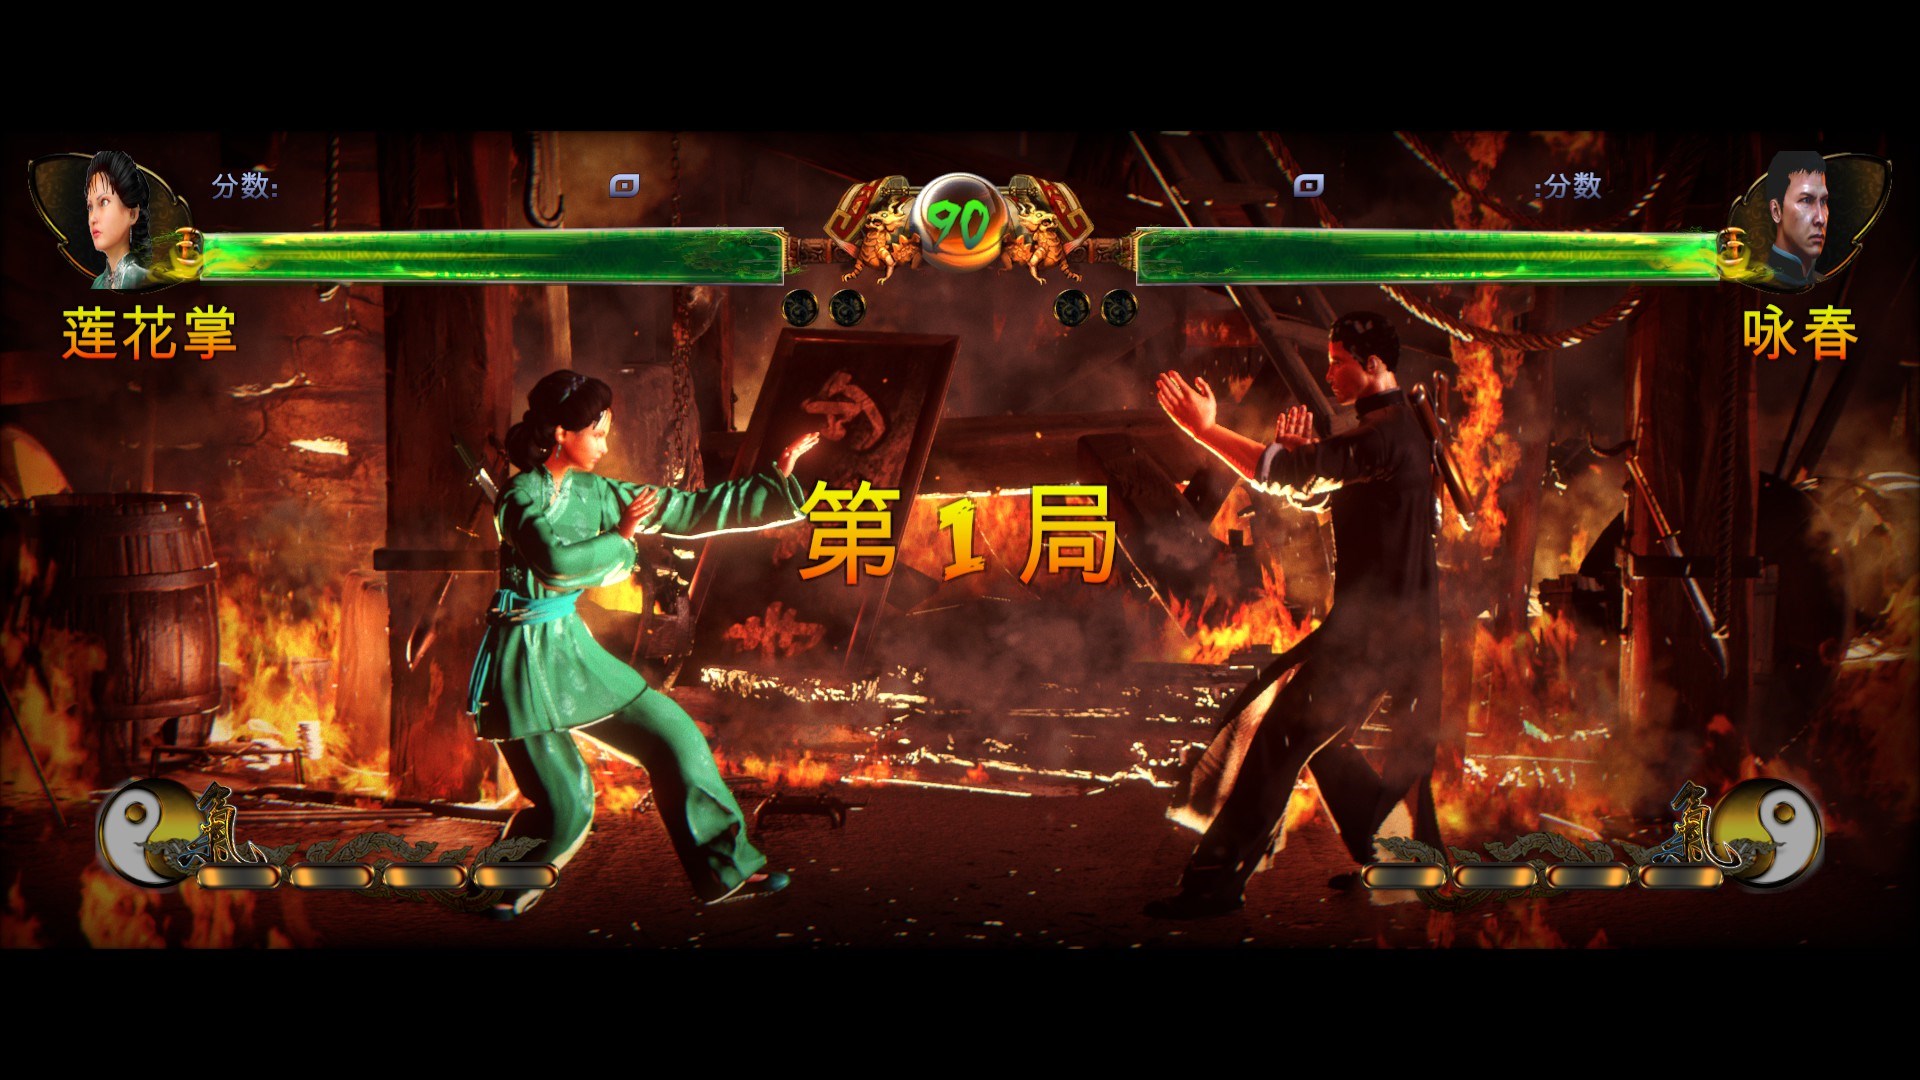 Next Week on Xbox: Neue Spiele vom 30. März bis 3. April: Shaolin vs Wutang